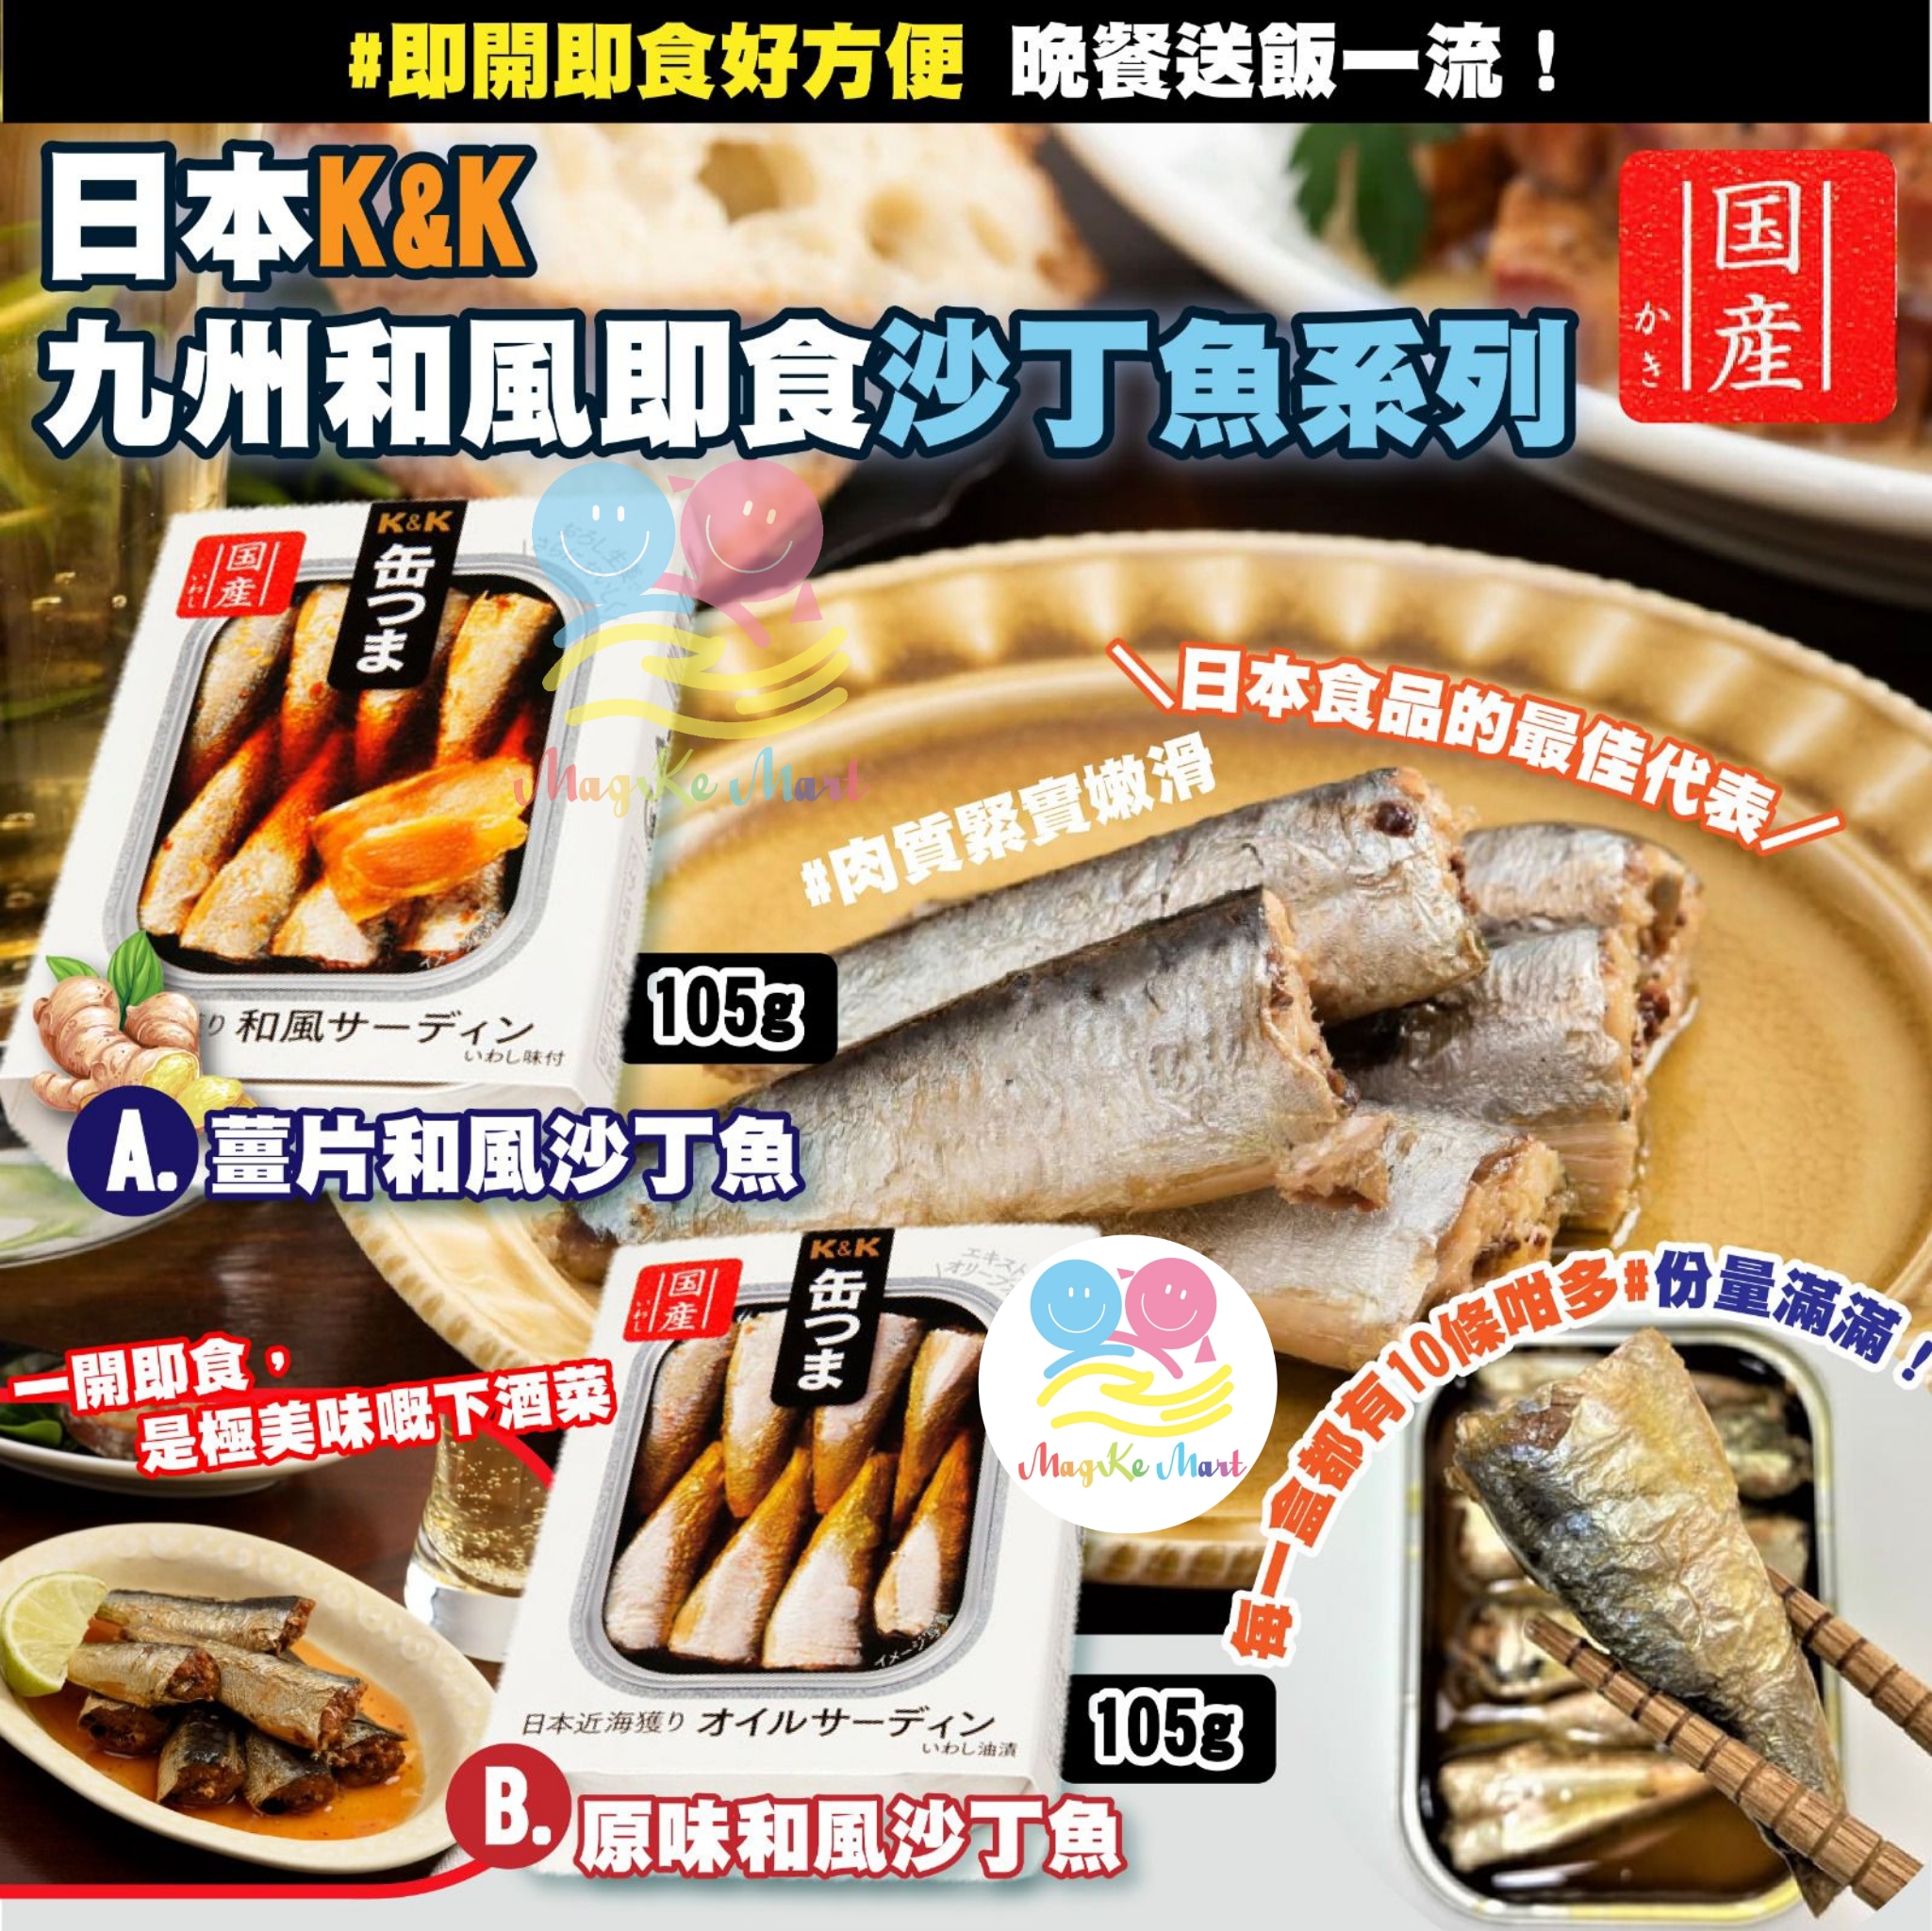 日本 K&K 九州和風沙丁魚系列 105g (B) 原味和風沙丁魚